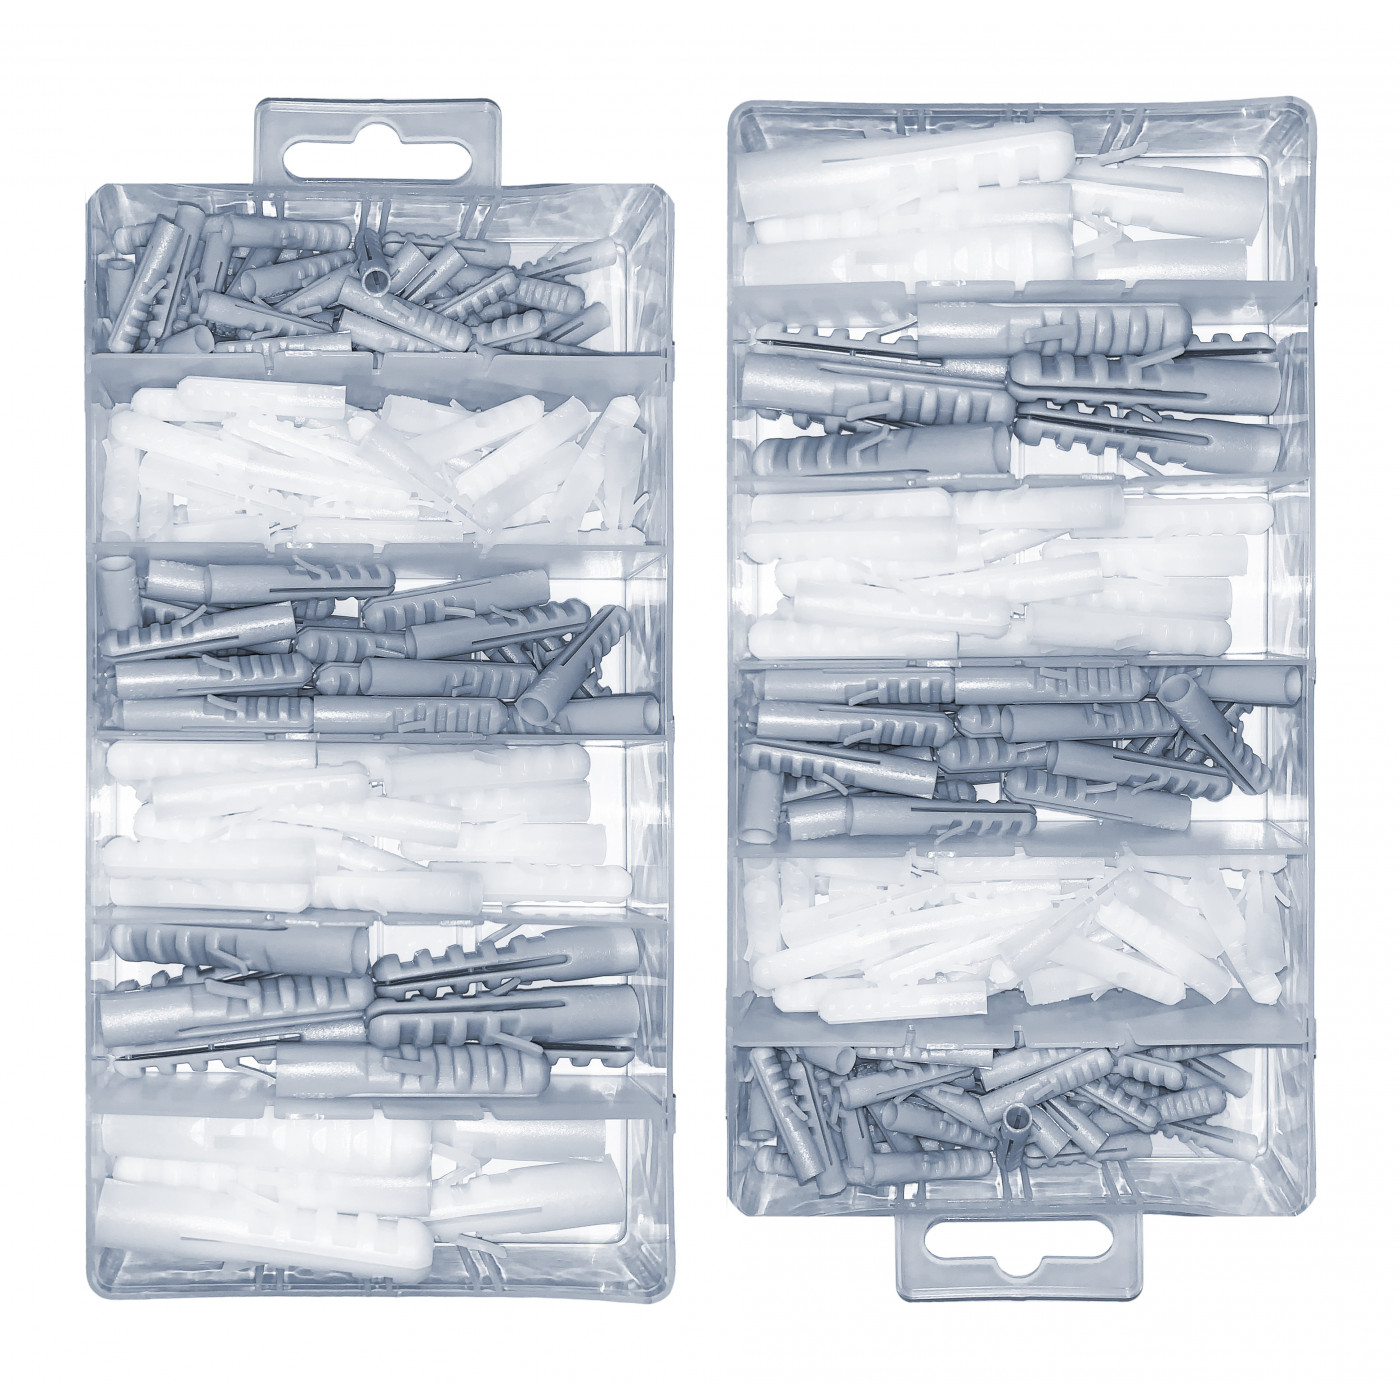 Juego de 276 tapones de plástico en 2 cajas (5-12 mm)